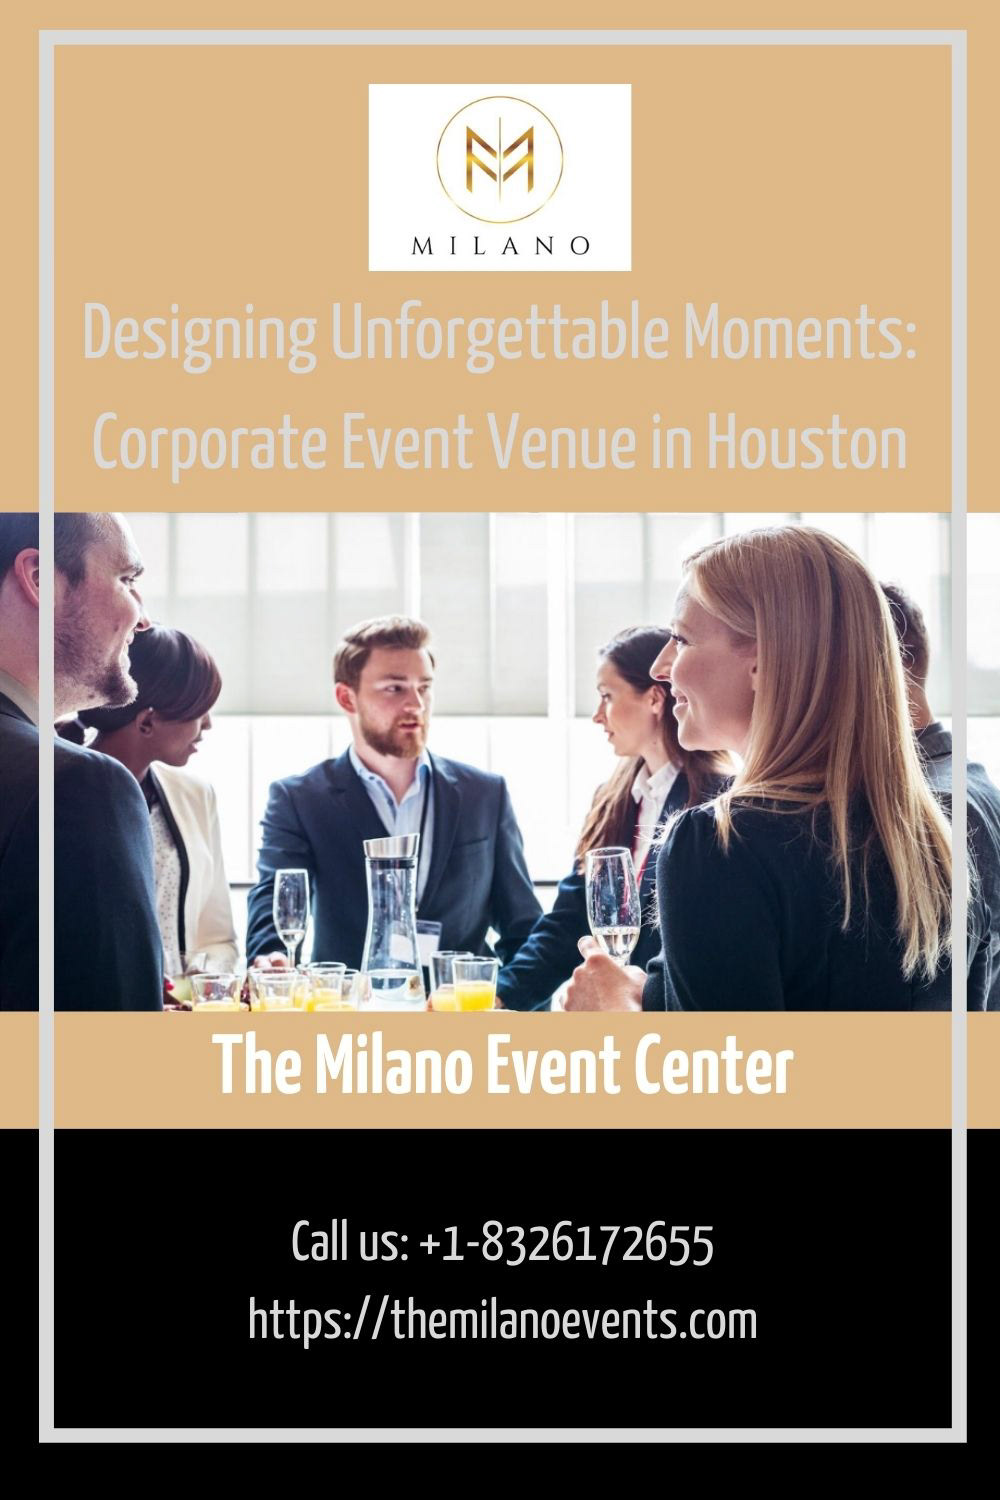 event center Milano Event Center Corporate event venue Event Center Houston Event Venue Houston Event Venue in Houston